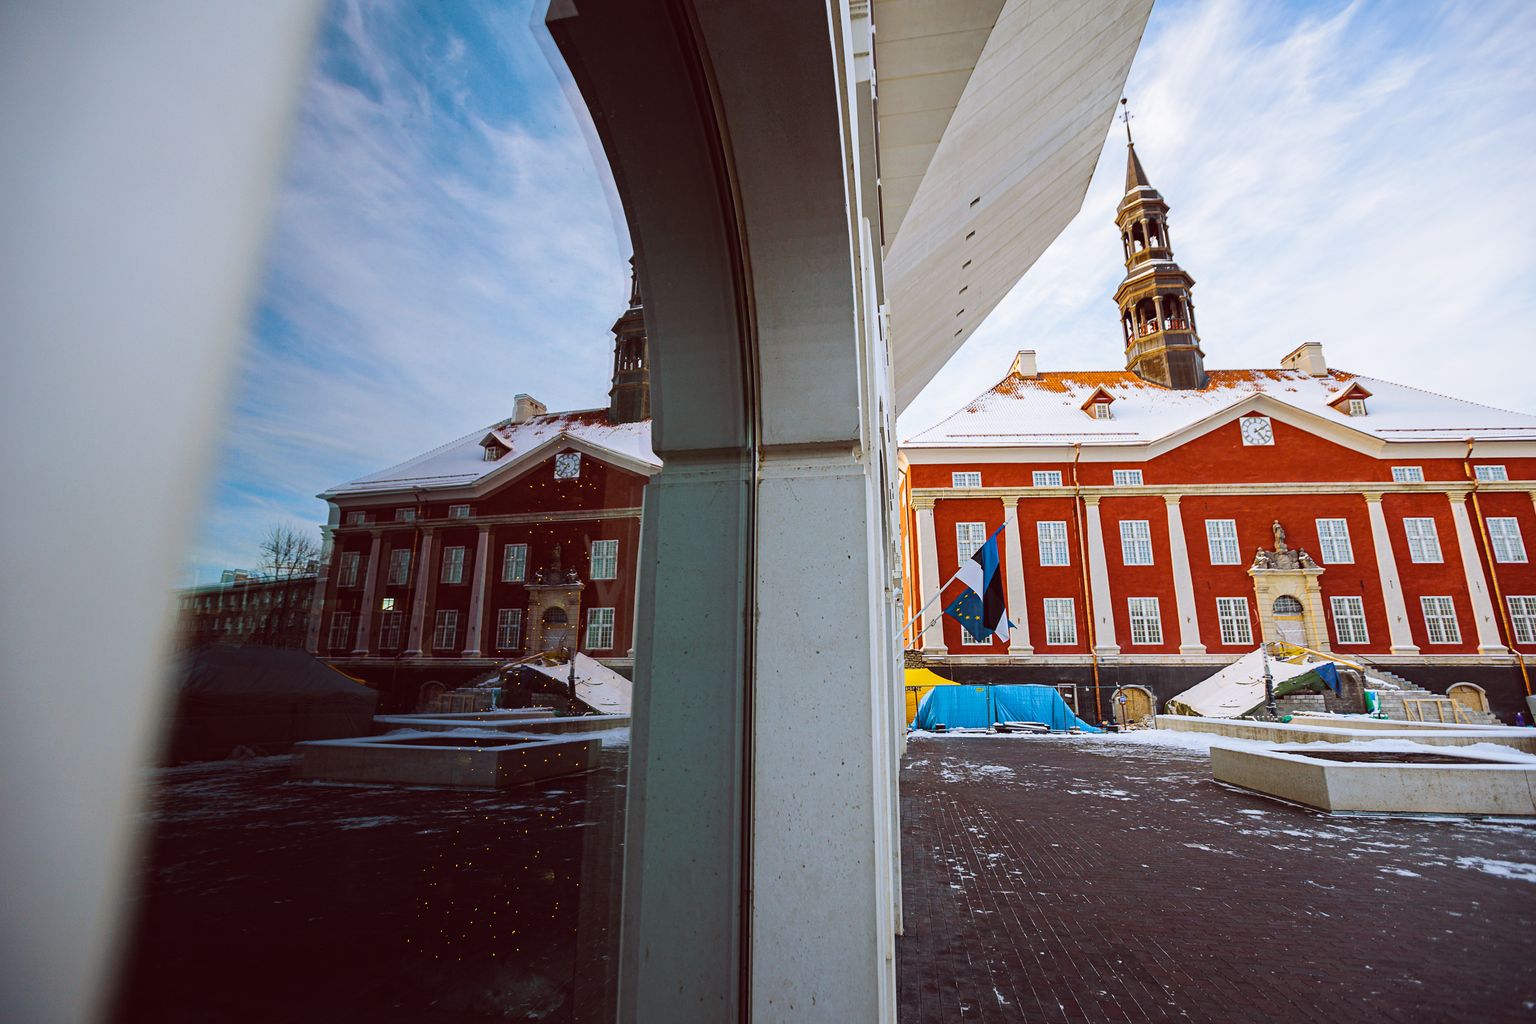 Еще не совсем до конца отреставрированная Нарвская ратуша и ее отражение в окне Нарвского колледжа Тартуского университета.